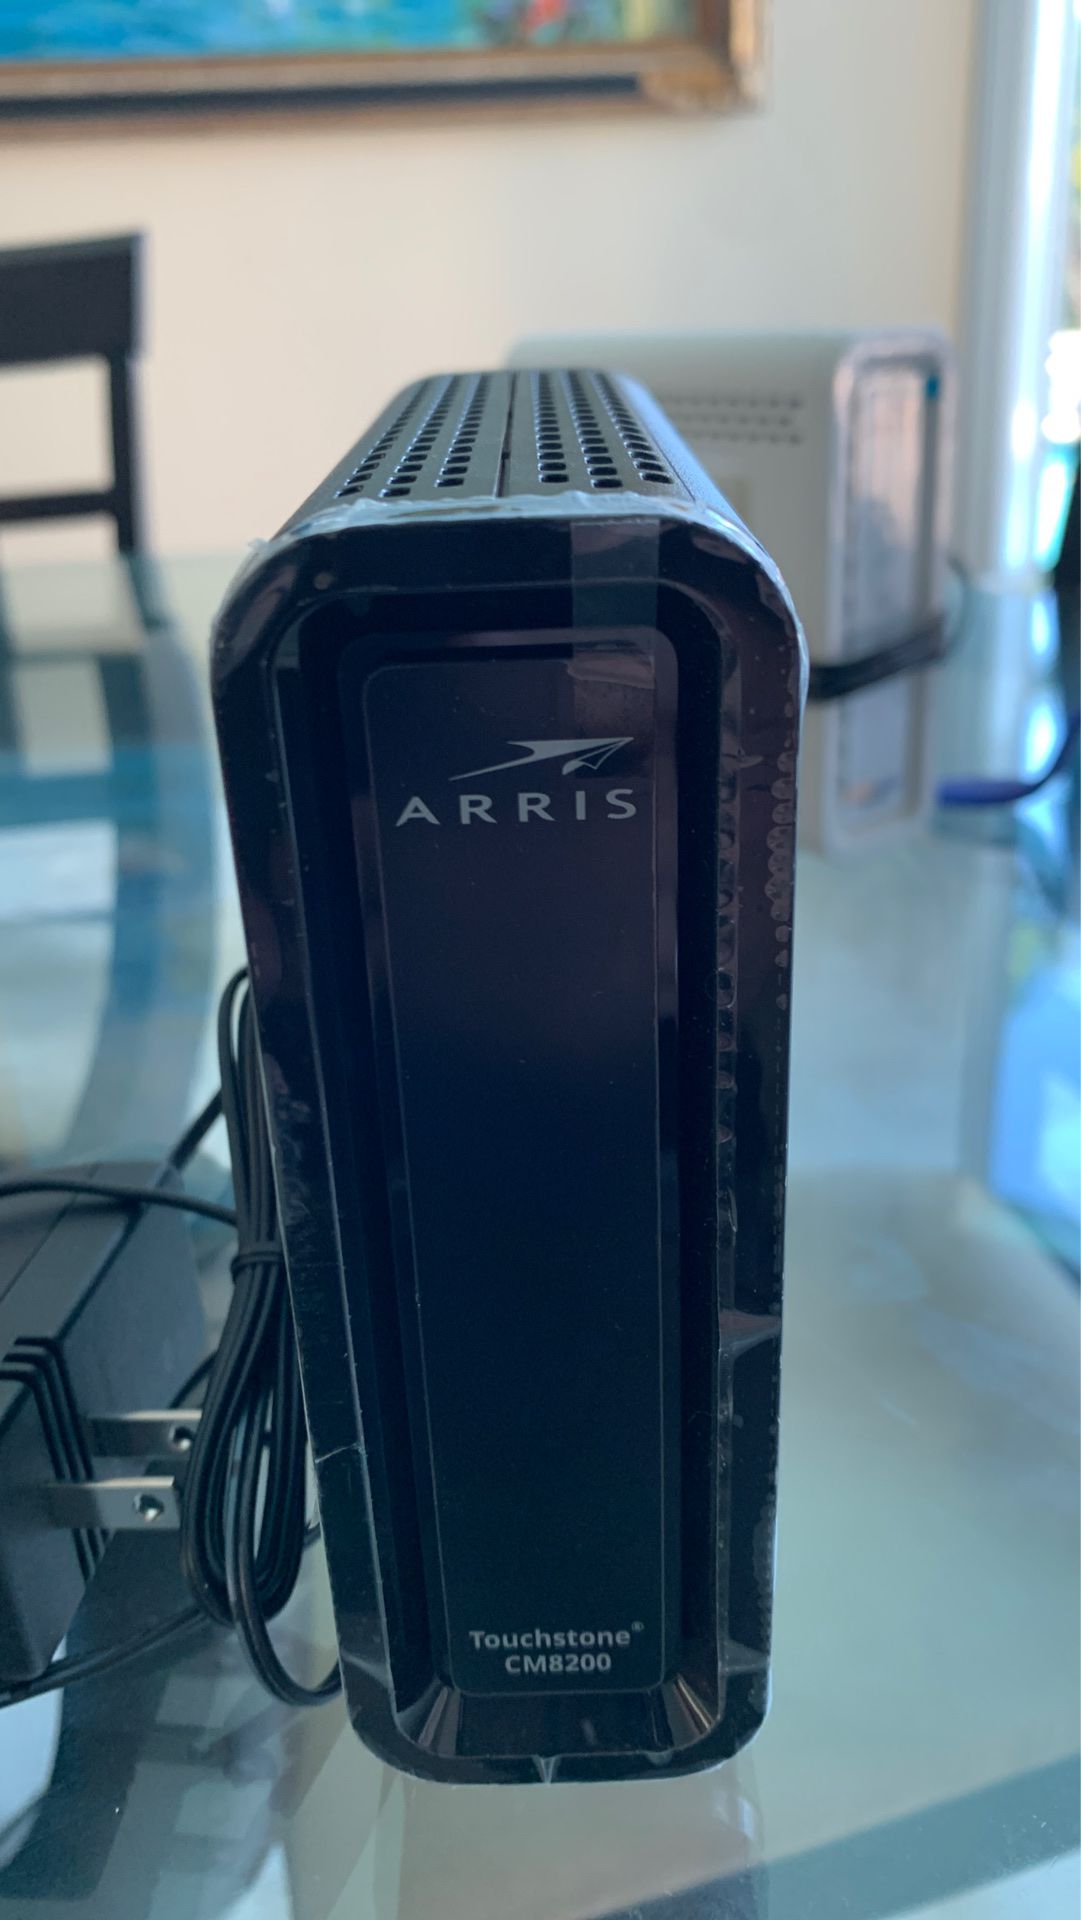 ARRIS Docsis 3.1 Cable Modem CM8200